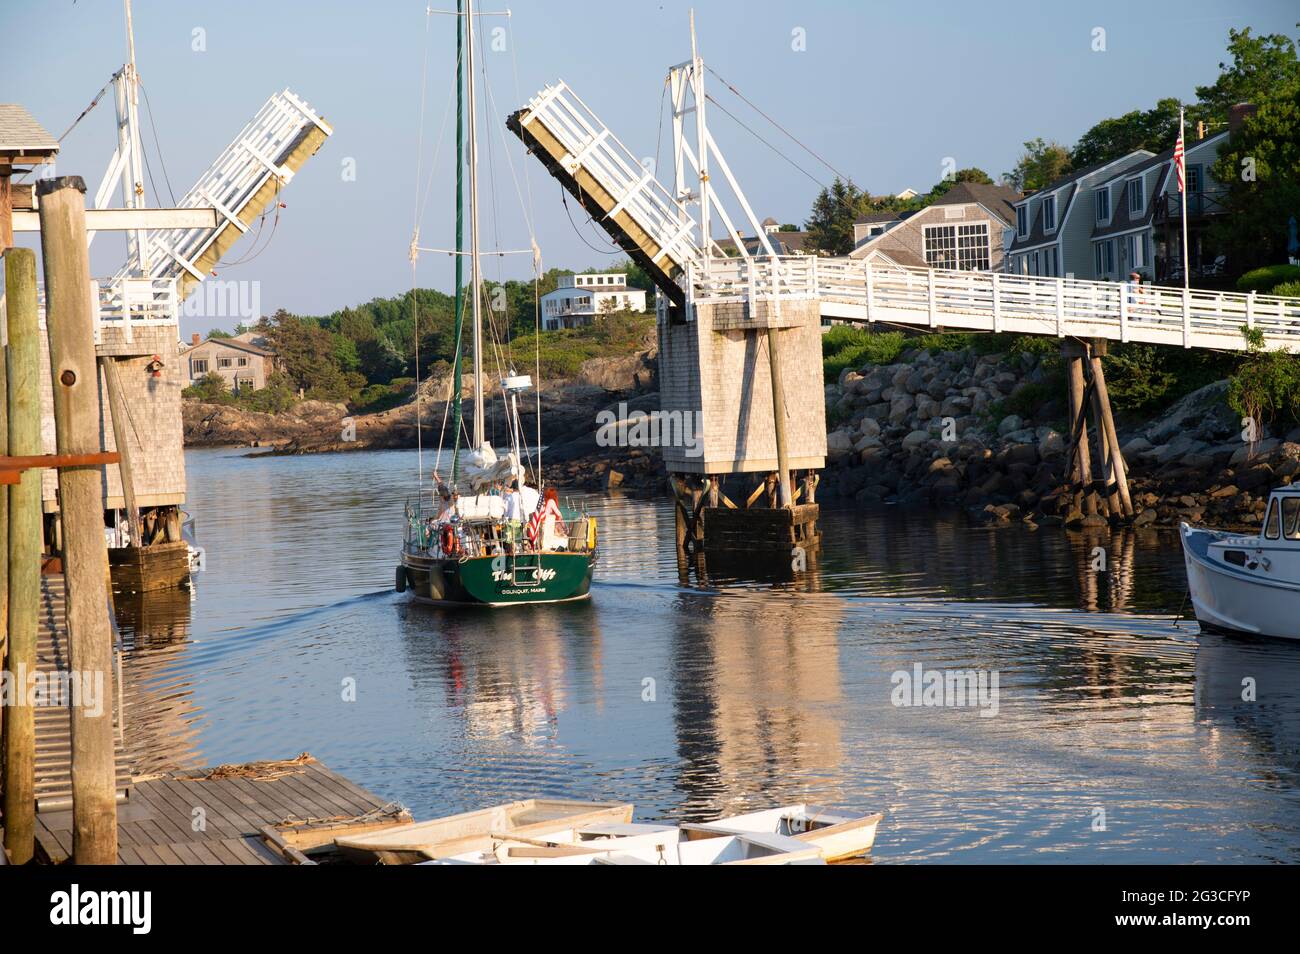 Le pont piétonnier ouvert fait place à un voilier sur Perkins Cove, Ogunquit, Maine, Etats-Unis Banque D'Images